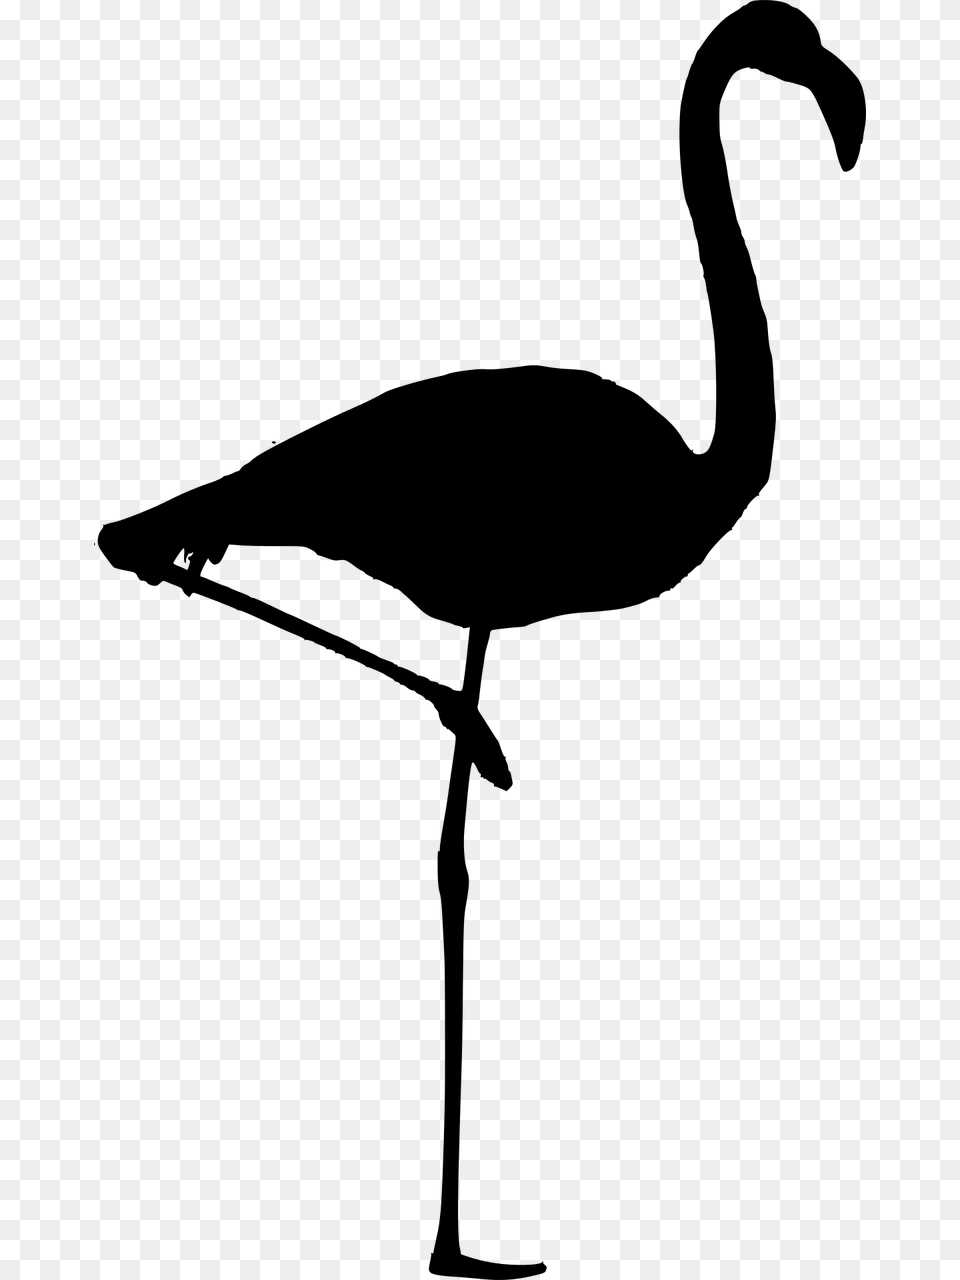 Silhouette Flamingo Vector Flamingo Birds Tropical Silueta De Un Flamenco, Gray Free Png